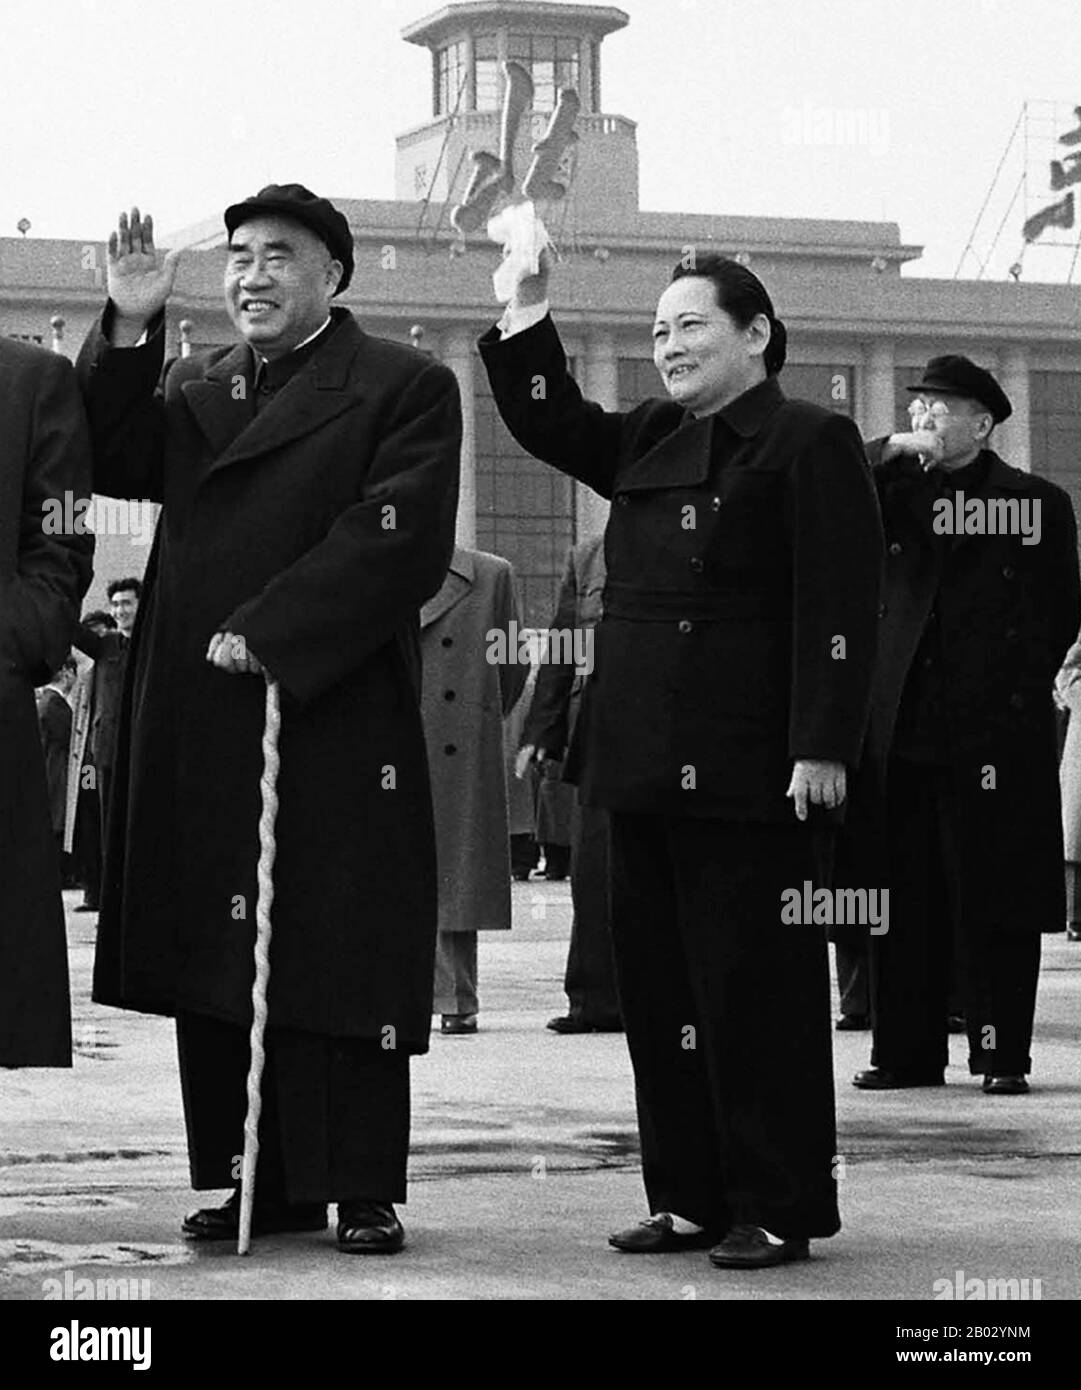 Zhu De era un capo militare comunista cinese e statista. È considerato come il fondatore dell'esercito rosso cinese (il precursore dell'esercito di liberazione Del Popolo) e il tattico che ha progettato la vittoria della Repubblica Popolare cinese durante la guerra civile cinese. Soong CH'ing-ling, Shanghai, 1920 (pinyin: Song Qingling, 27 gennaio 1893 – 29 maggio 1981), anche conosciuto come Madame Sun Yat-sen, era una delle tre sorelle Soong che, insieme ai loro mariti, erano tra le figure politiche più significative della Cina all'inizio del 20th secolo. È stata Vice Presidente della Repubblica Popolare Foto Stock